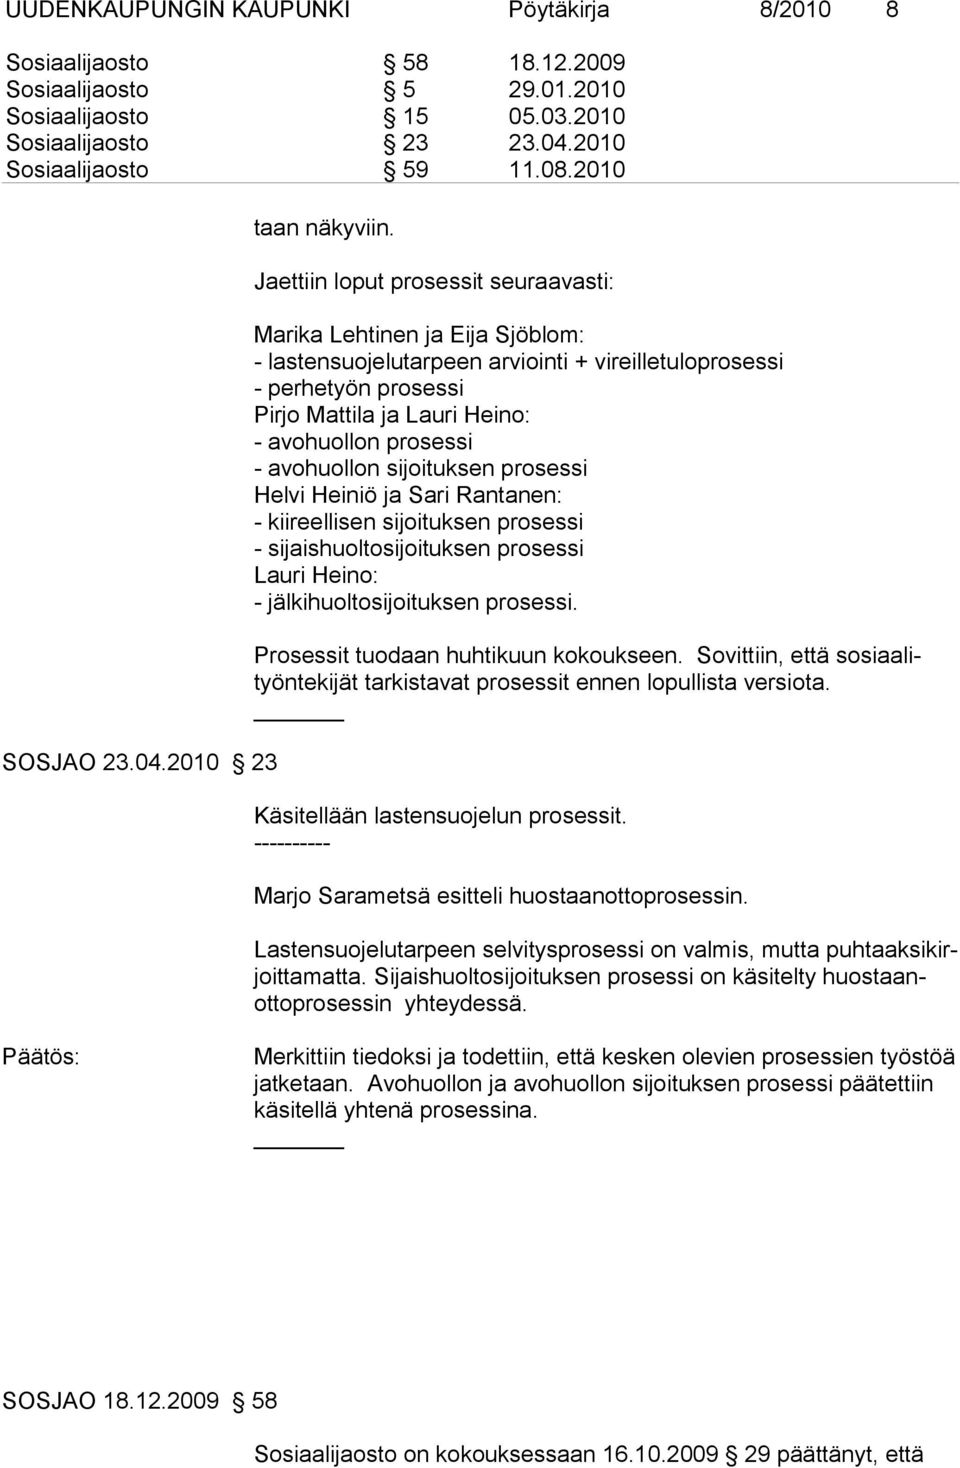 Jaettiin loput prosessit seuraavasti: Marika Lehtinen ja Eija Sjöblom: - lastensuojelutarpeen arviointi + vireilletuloprosessi - perhetyön prosessi Pirjo Mattila ja Lauri Heino: - avohuollon prosessi